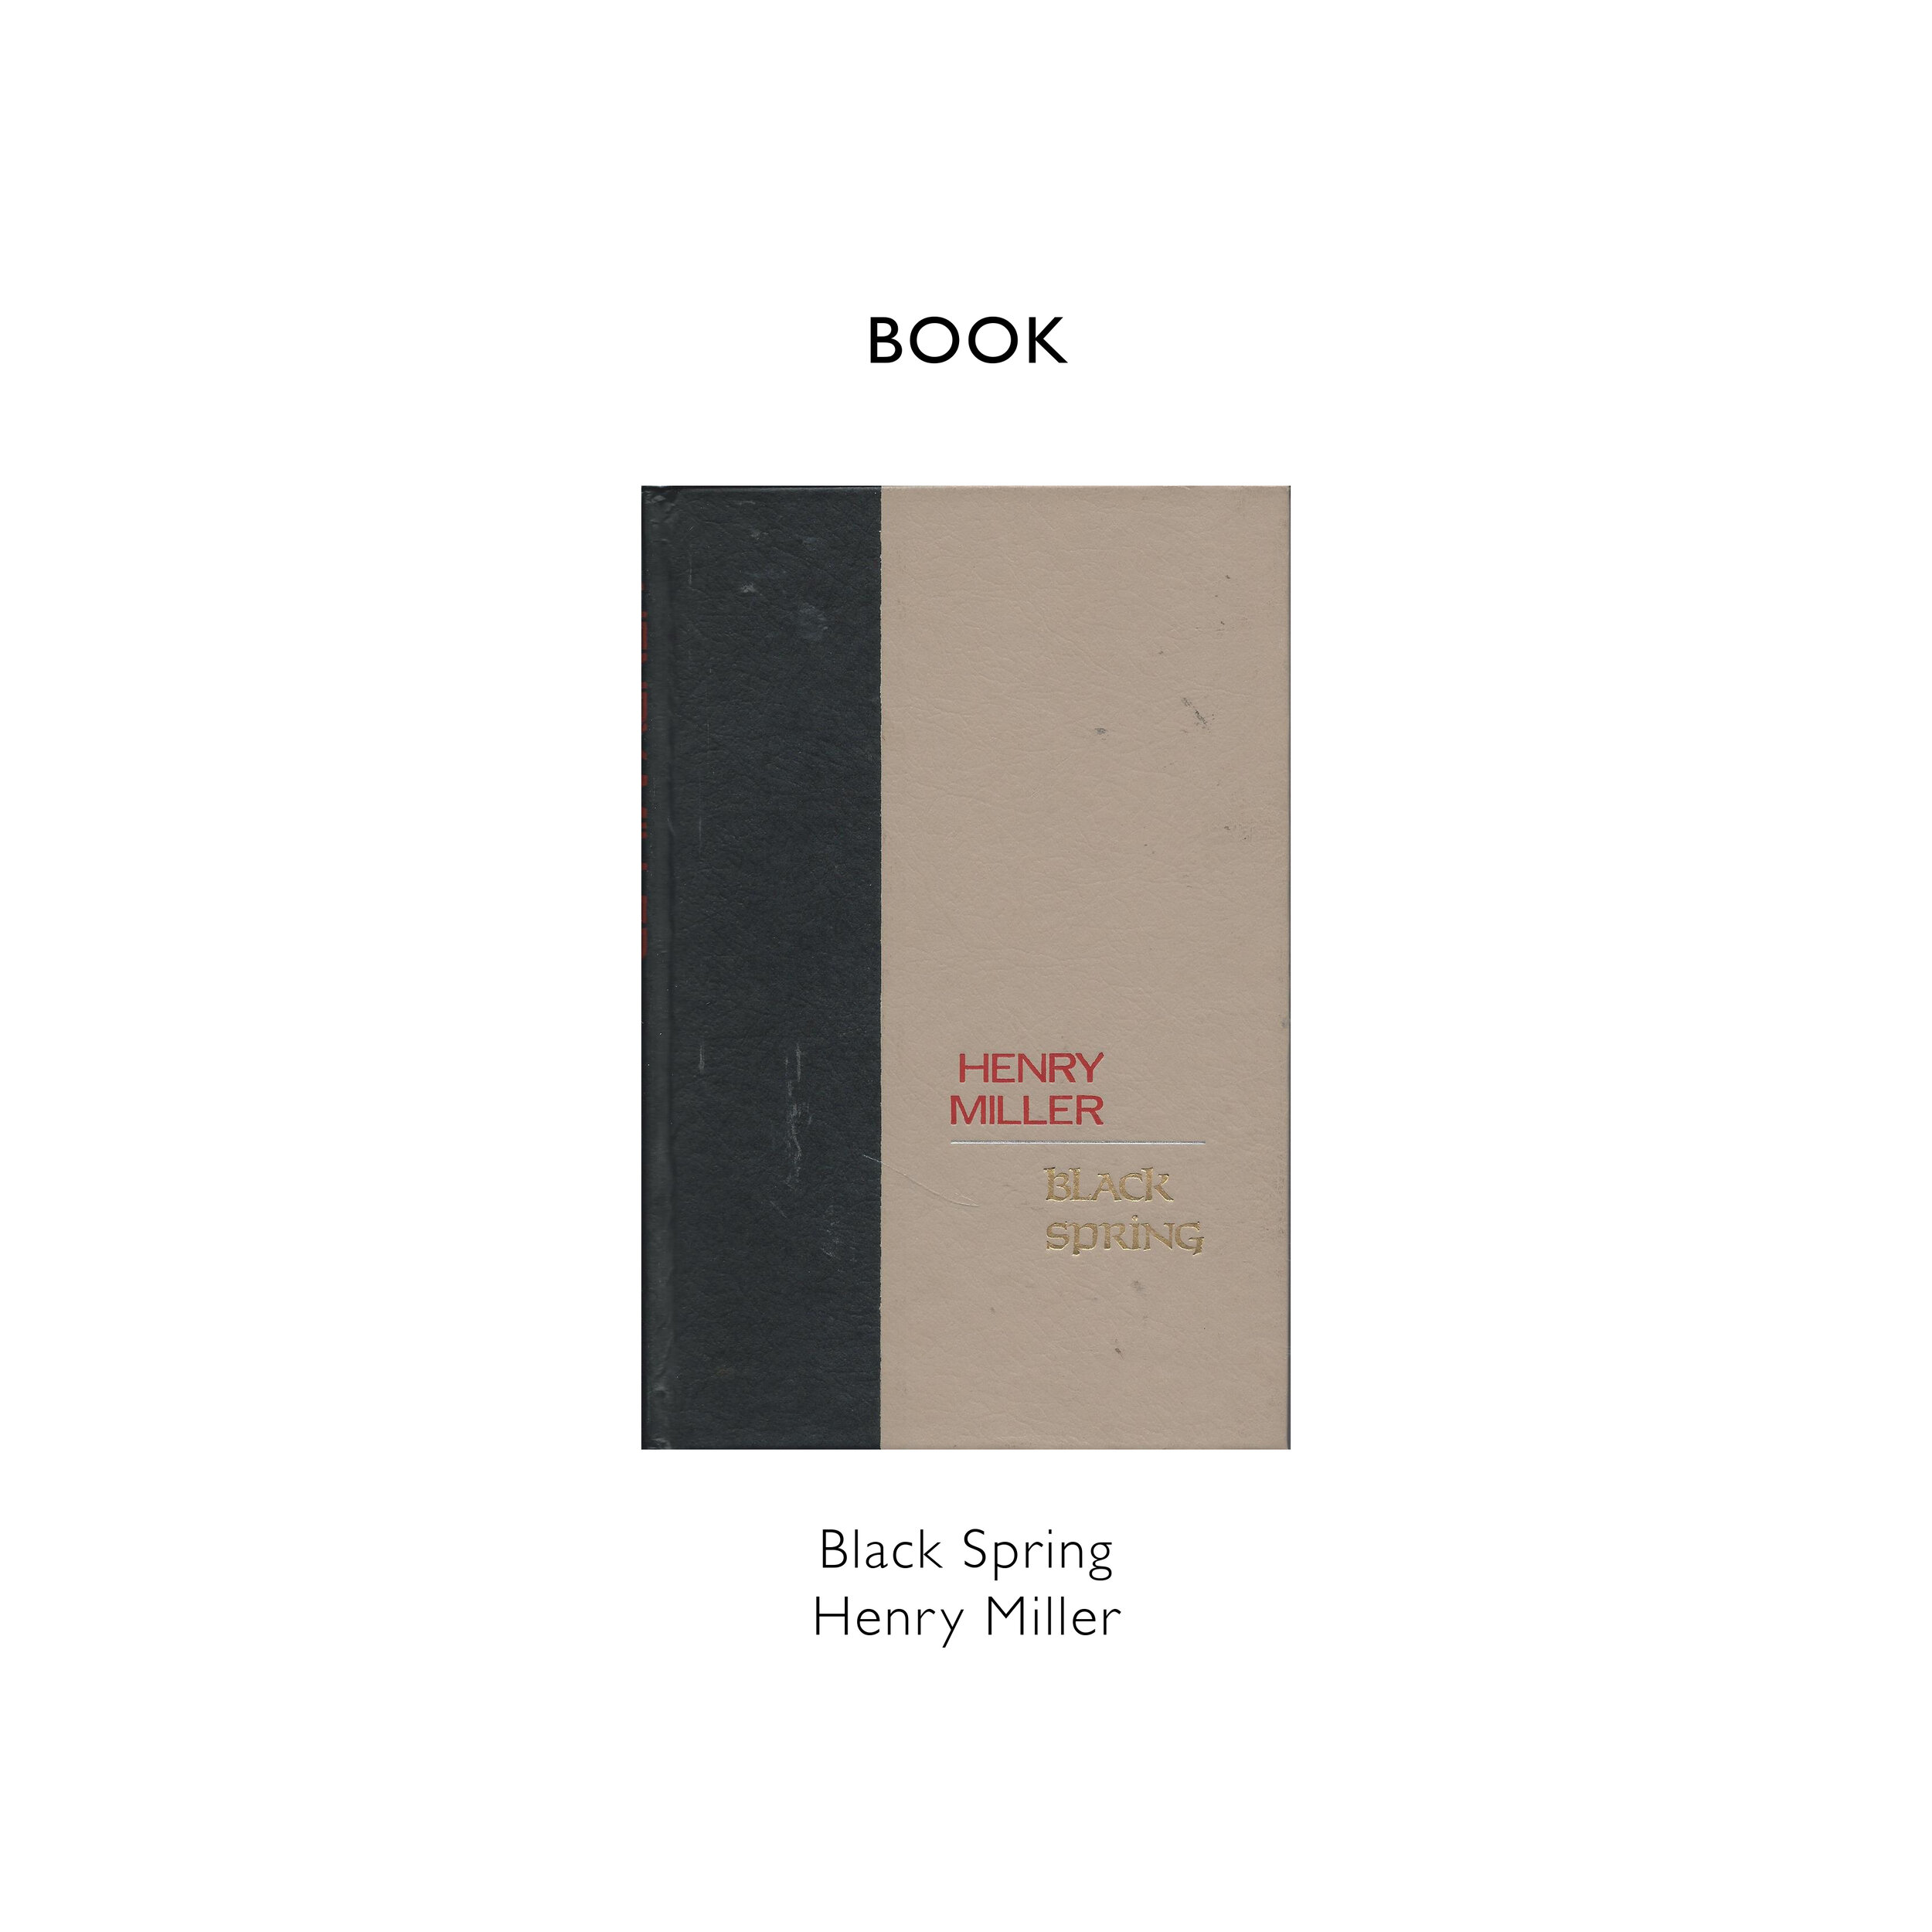 REFERENCE BLOG TEMPLATE Black Spring Henry Miller  copy.jpg